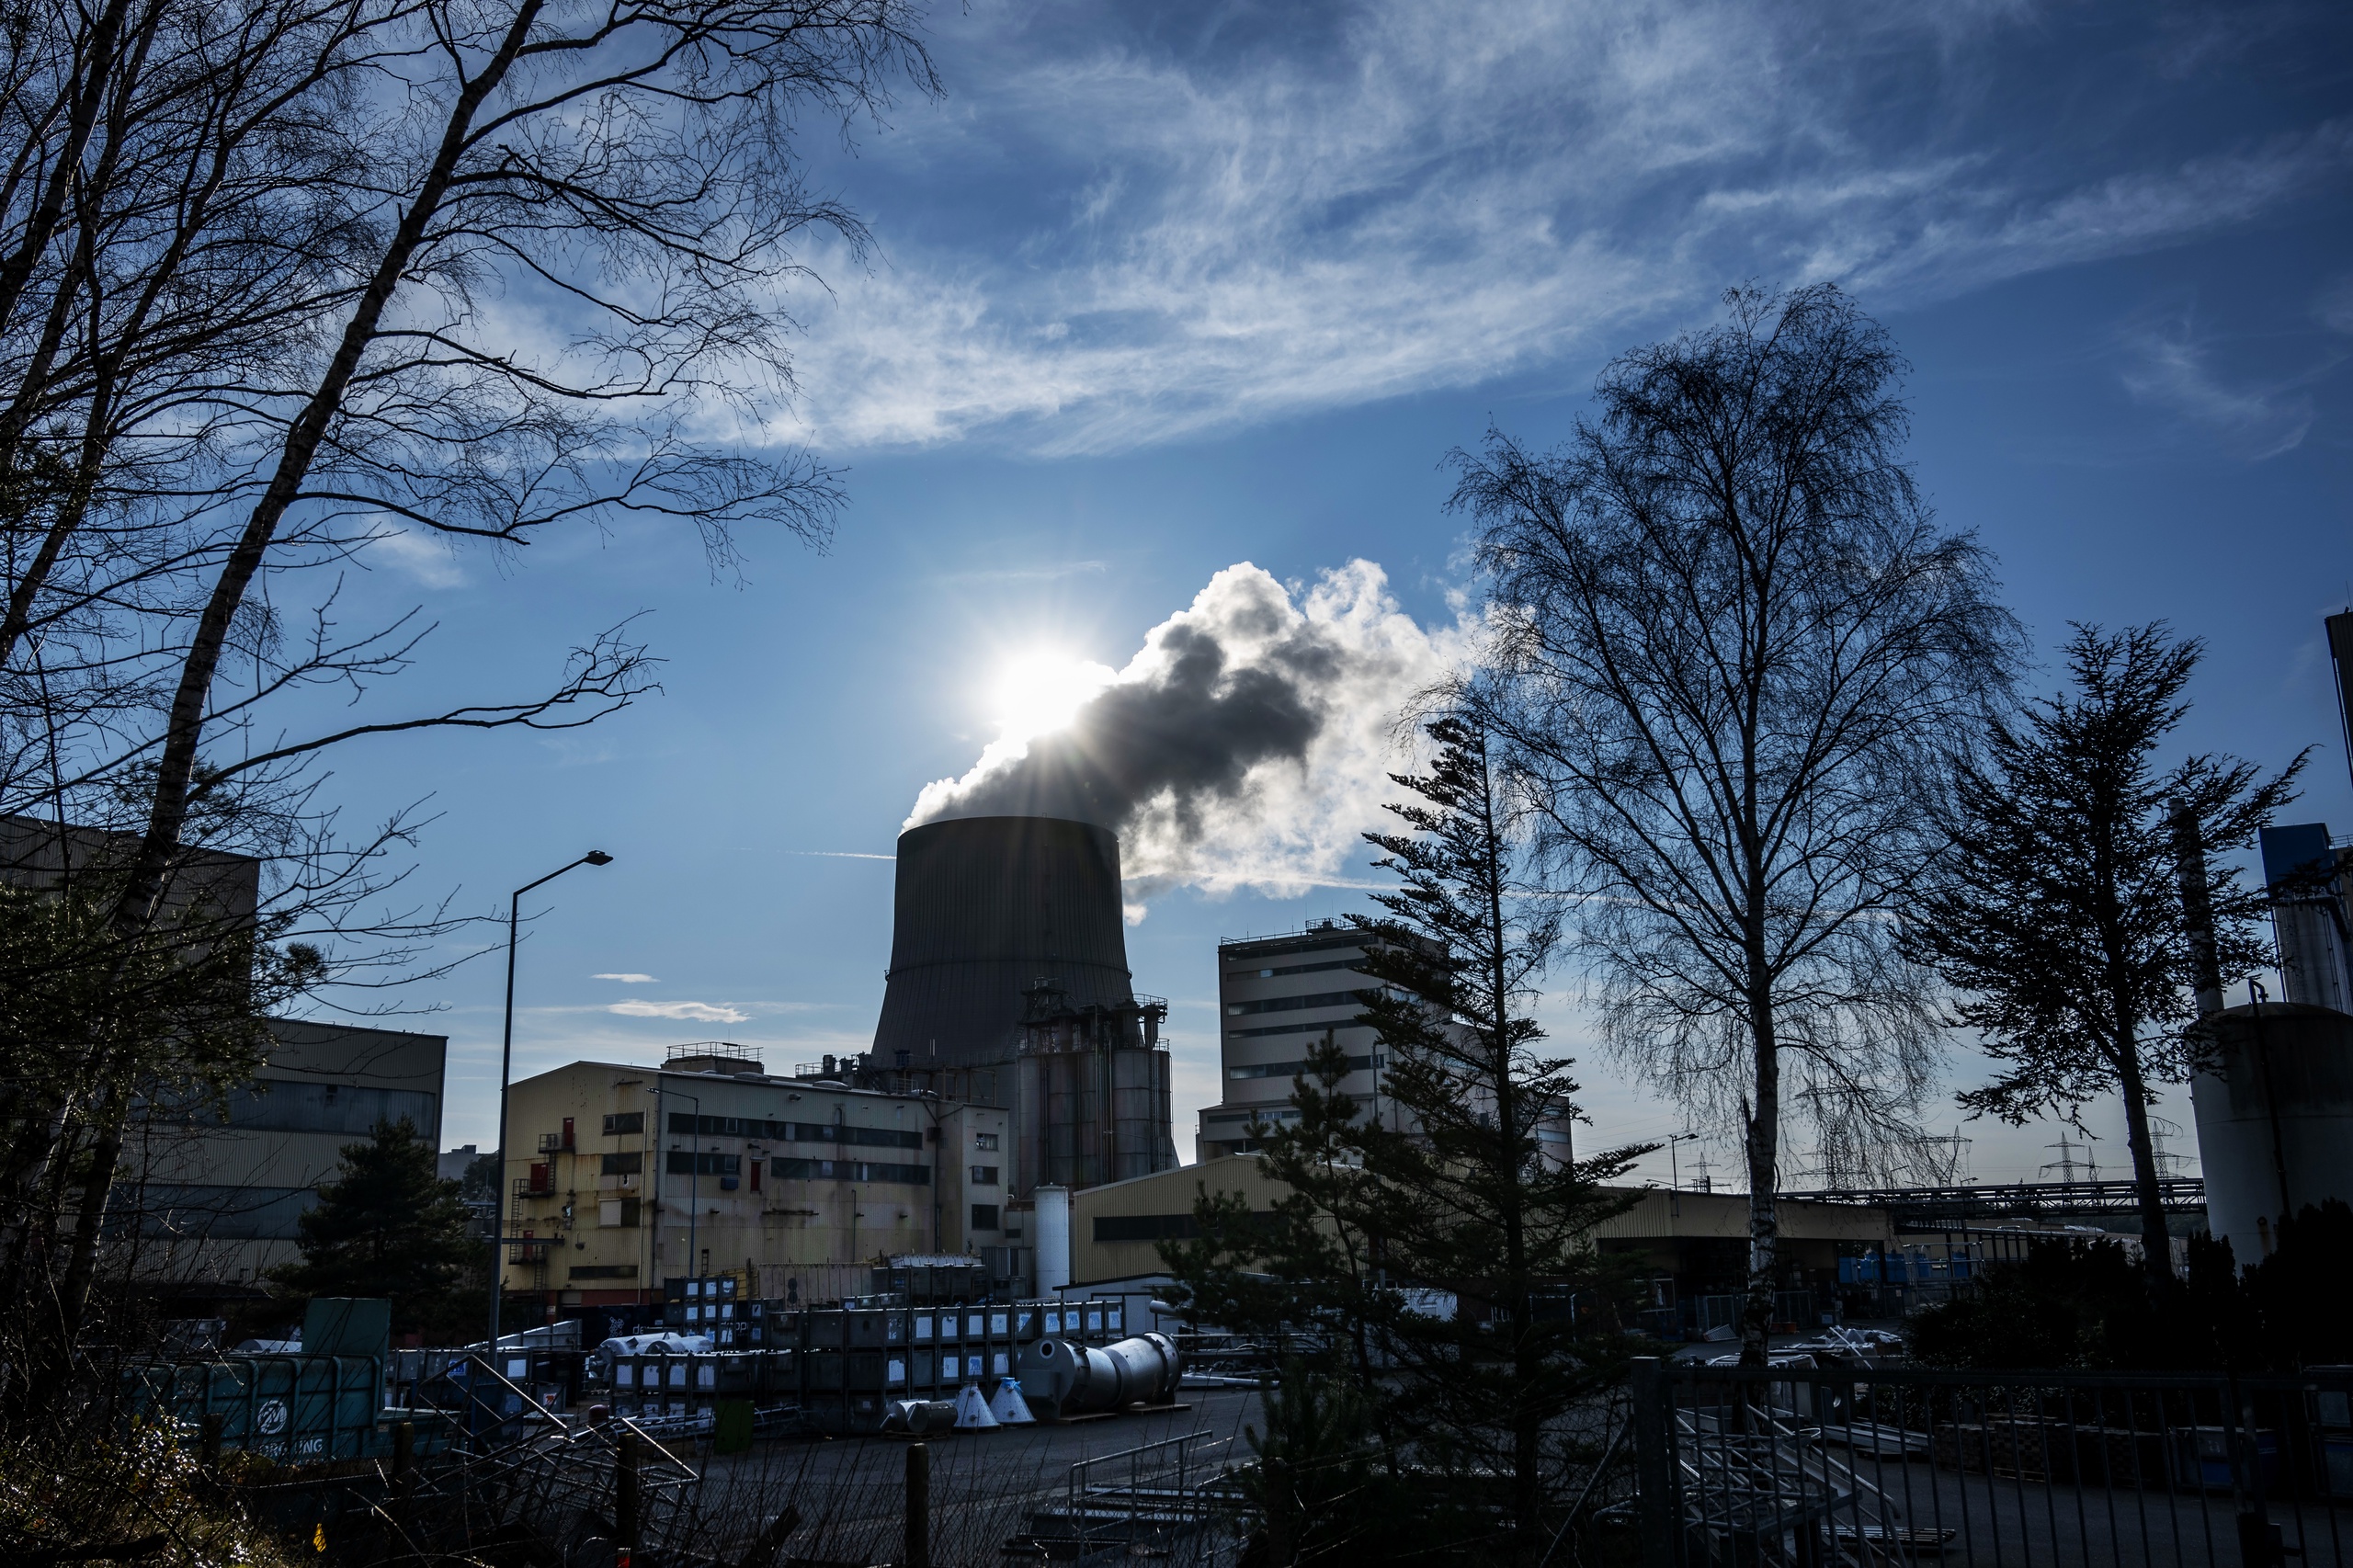 Kerncentrale Emsland (KKE) zou voor 2023 uit bedrijf genomen worden, maar Duitsland mikt nu op het langer openhouden van de centrale.